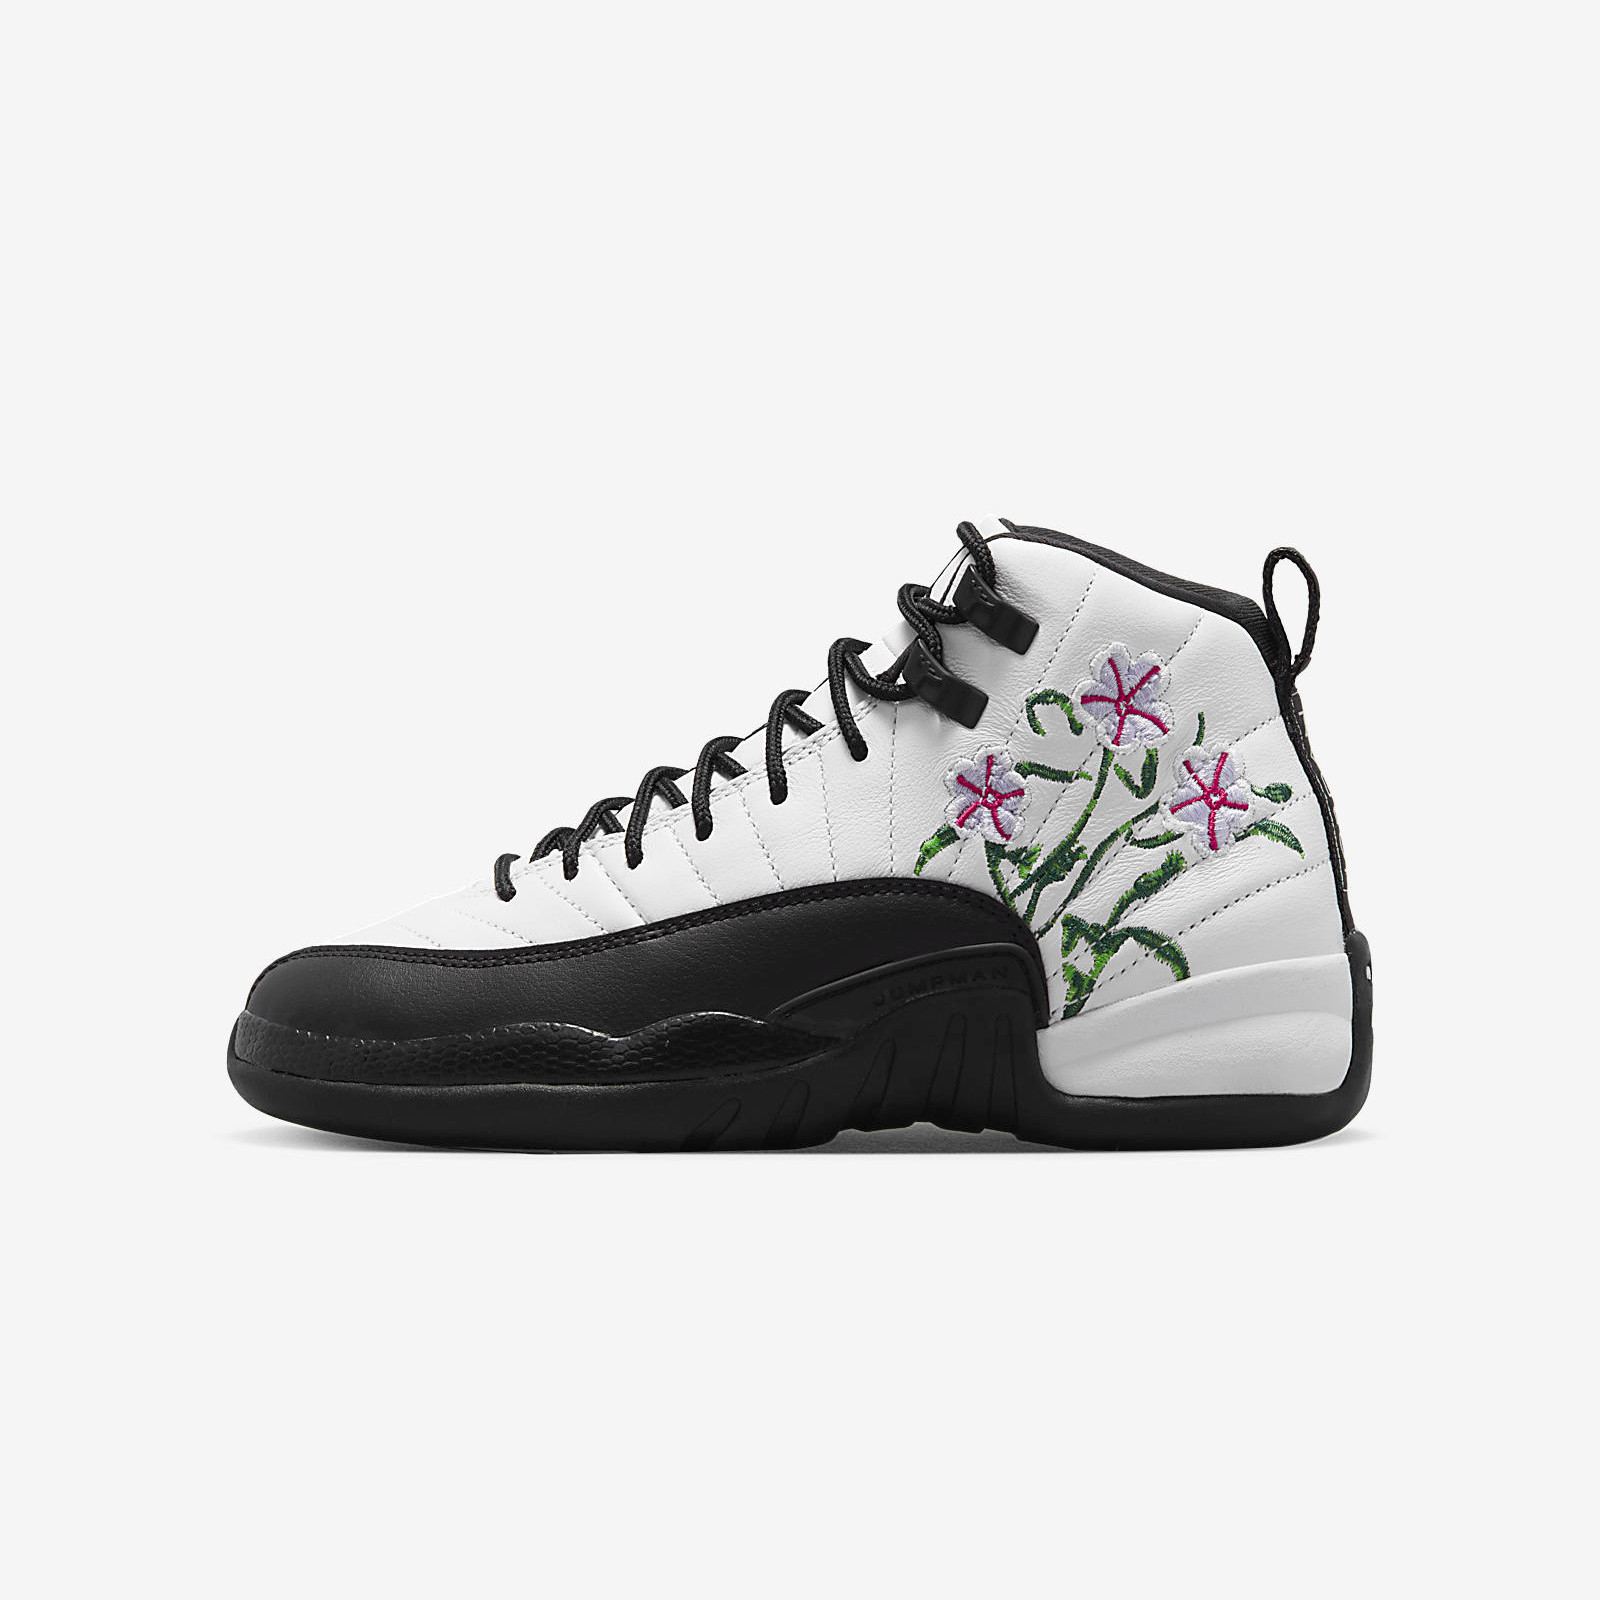 Air Jordan 12 Retro
« Floral »